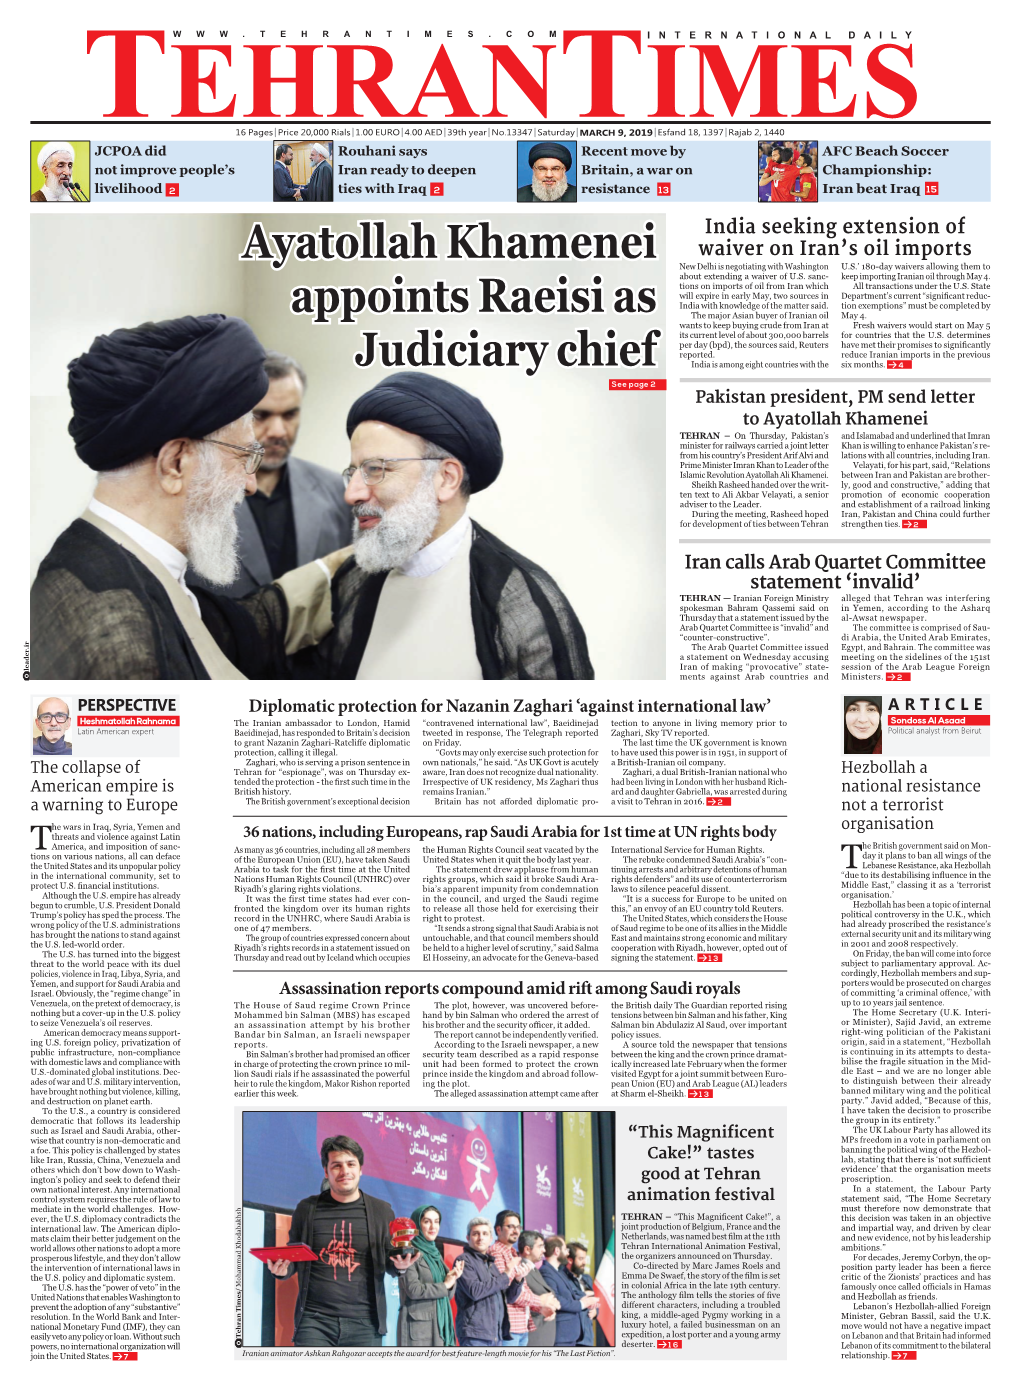 Ayatollah Khamenei Appoints Raeisi As Judiciary Chief